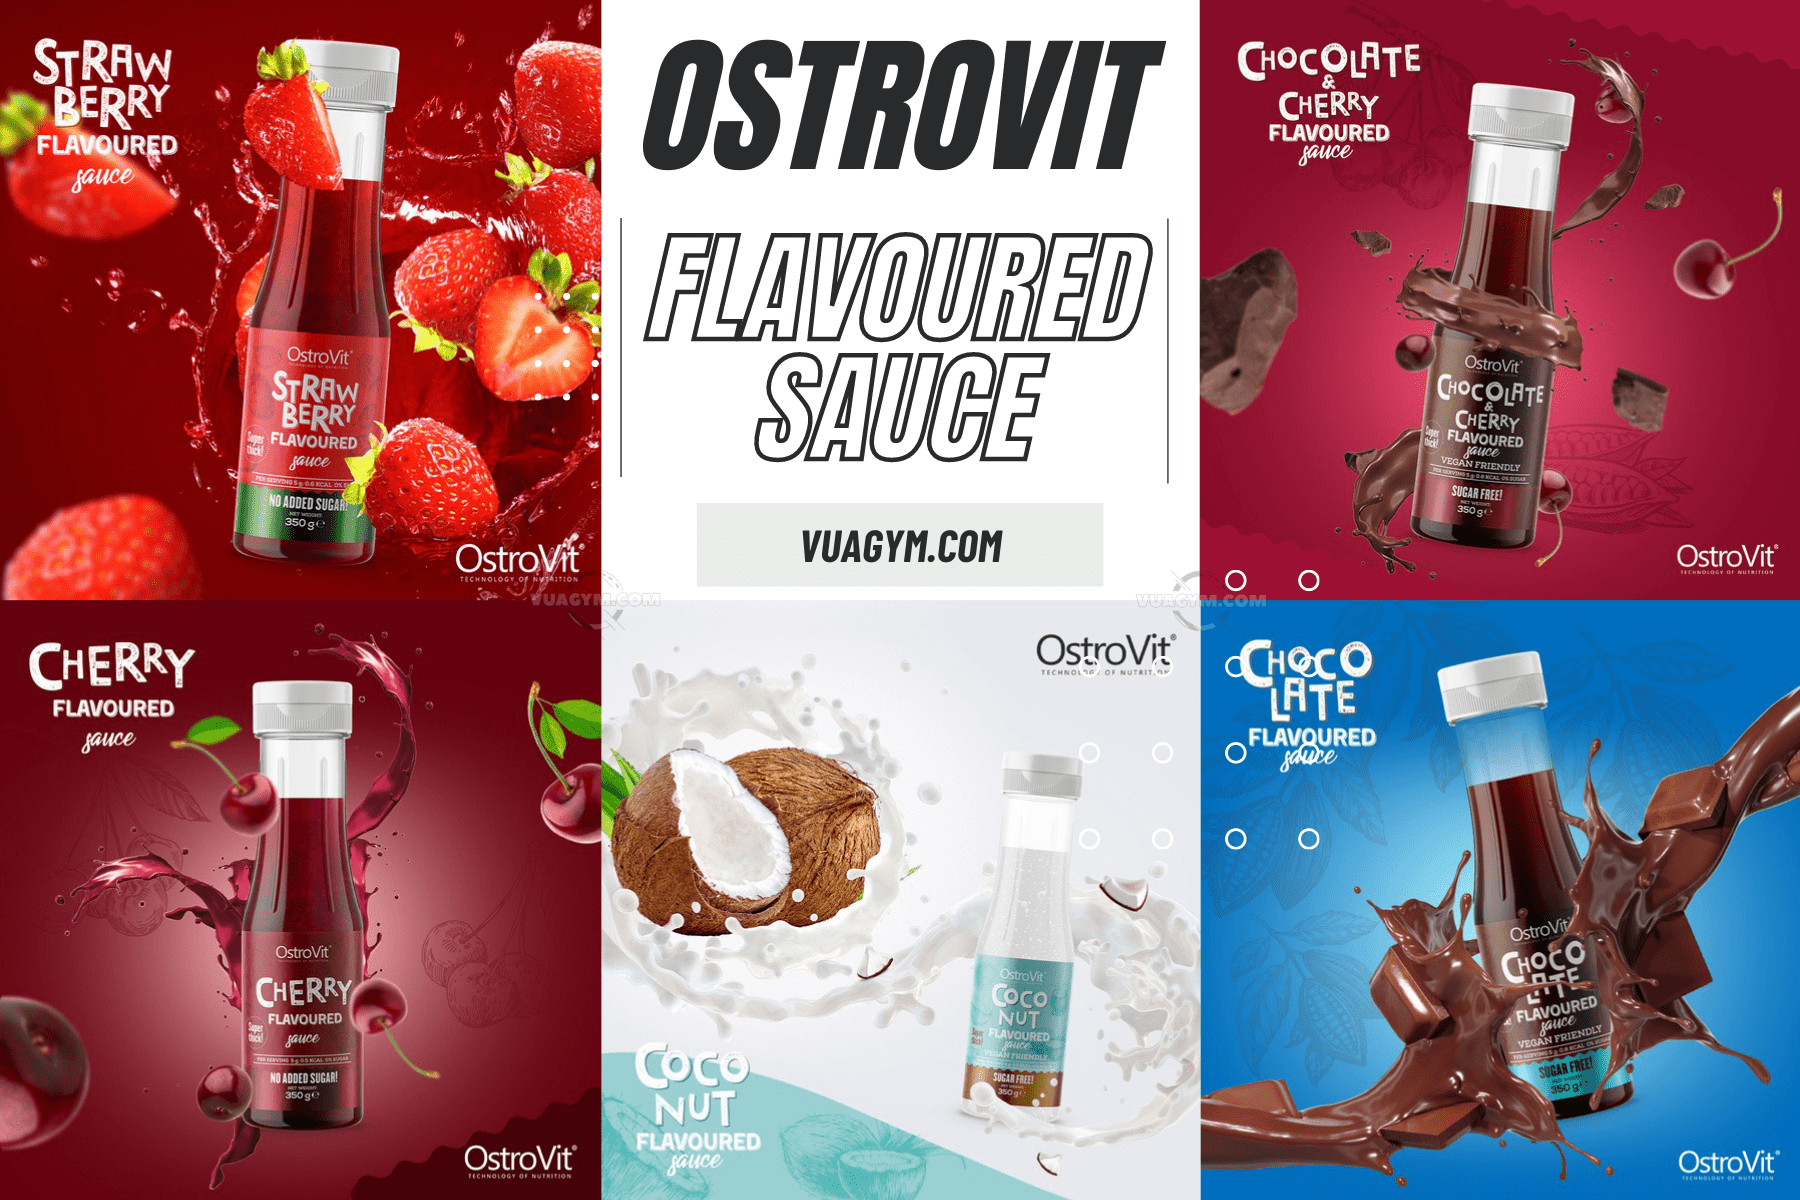 OstroVit - Flavoured Sauce (350g) - flavoured sauce